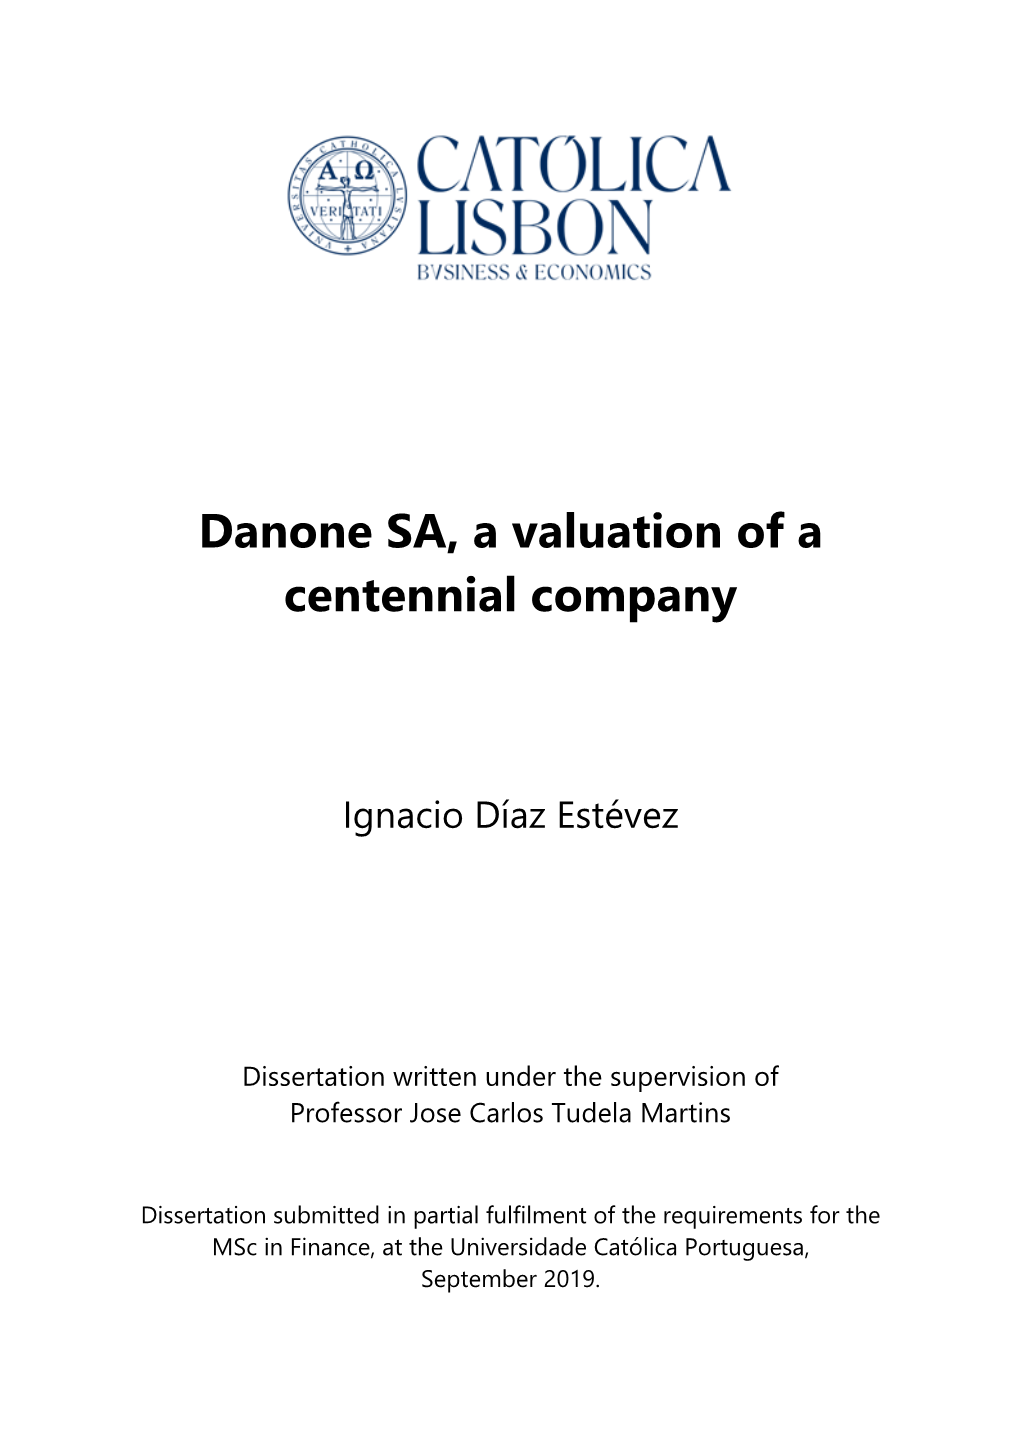 Danone SA, a Valuation of a Centennial Company